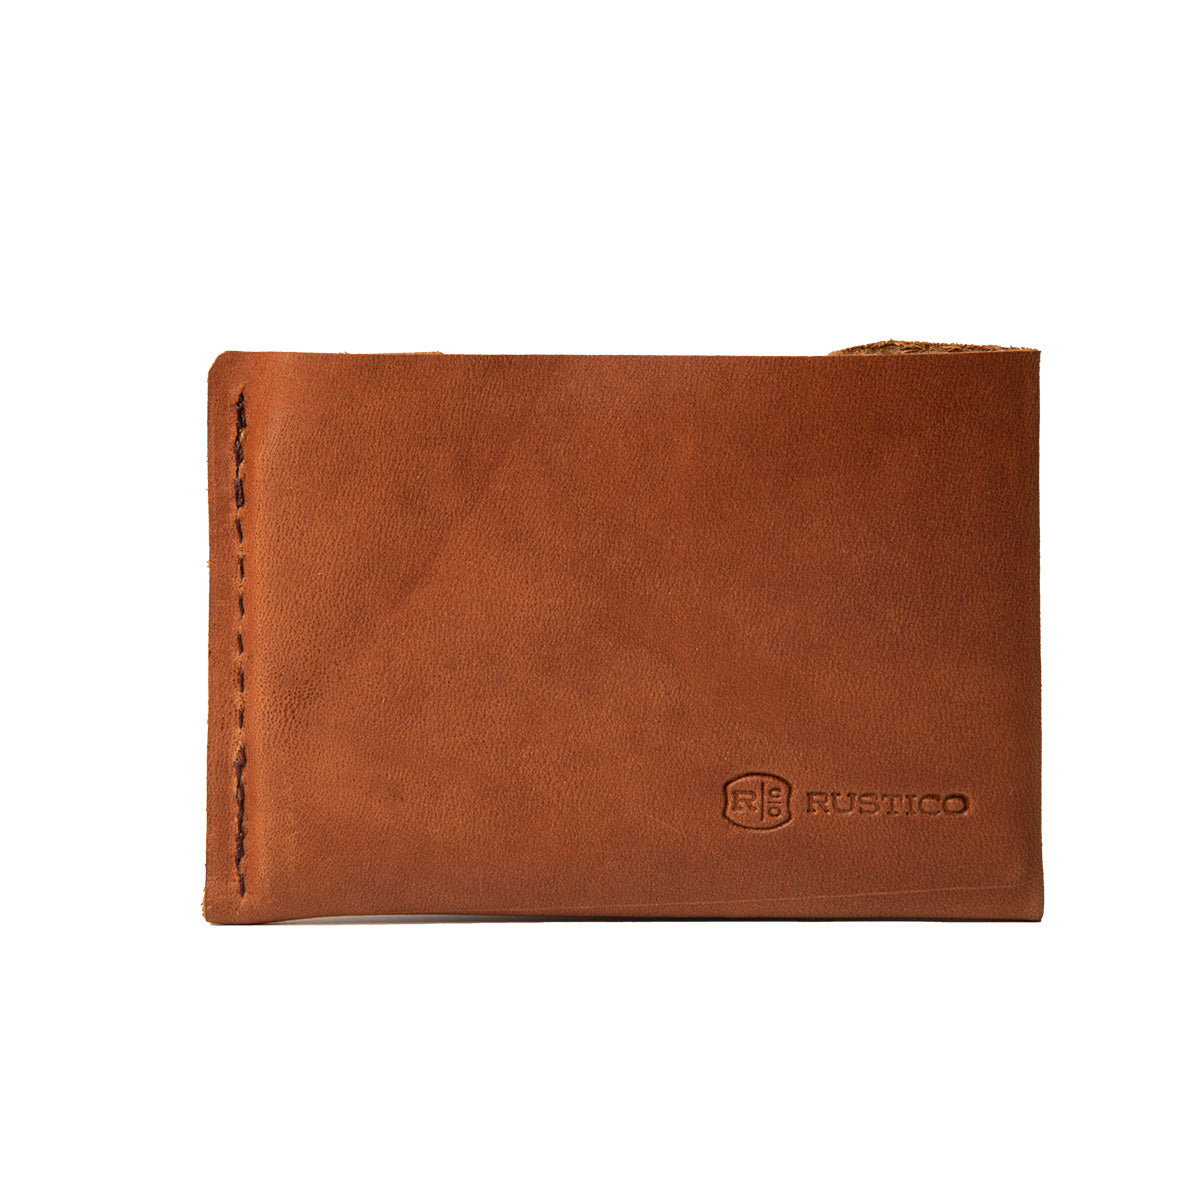 The 50 Best Wallets for Men  Best minimalist wallet, Leather wallet mens, Minimalist  wallet